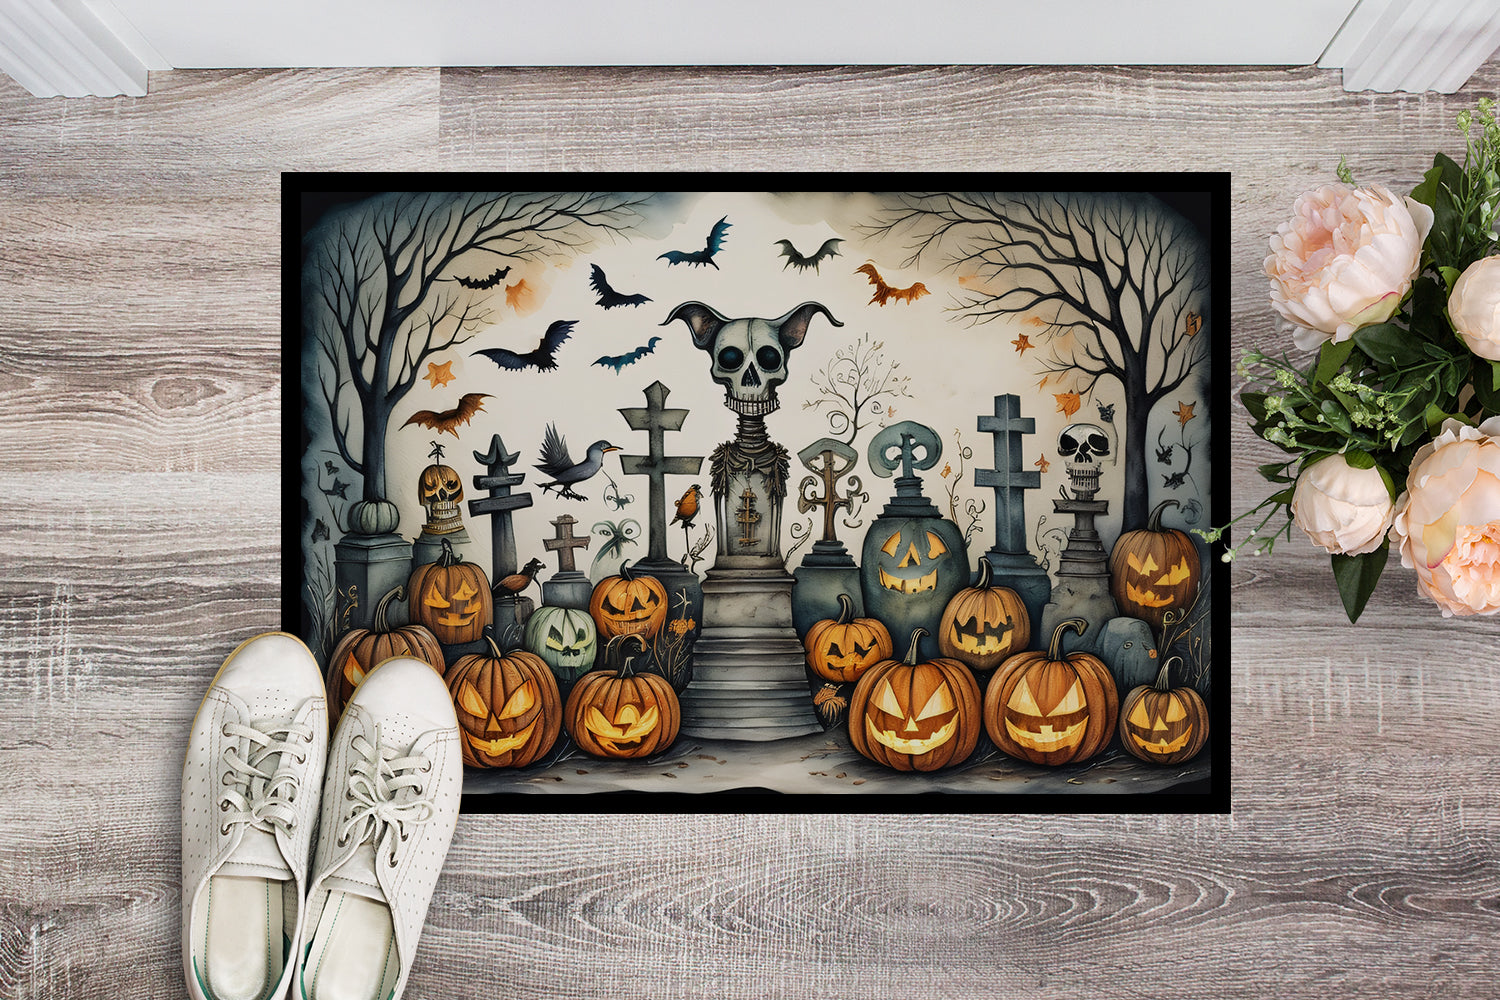 Pet Cemetery Spooky Halloween Doormat 18x27  the-store.com.